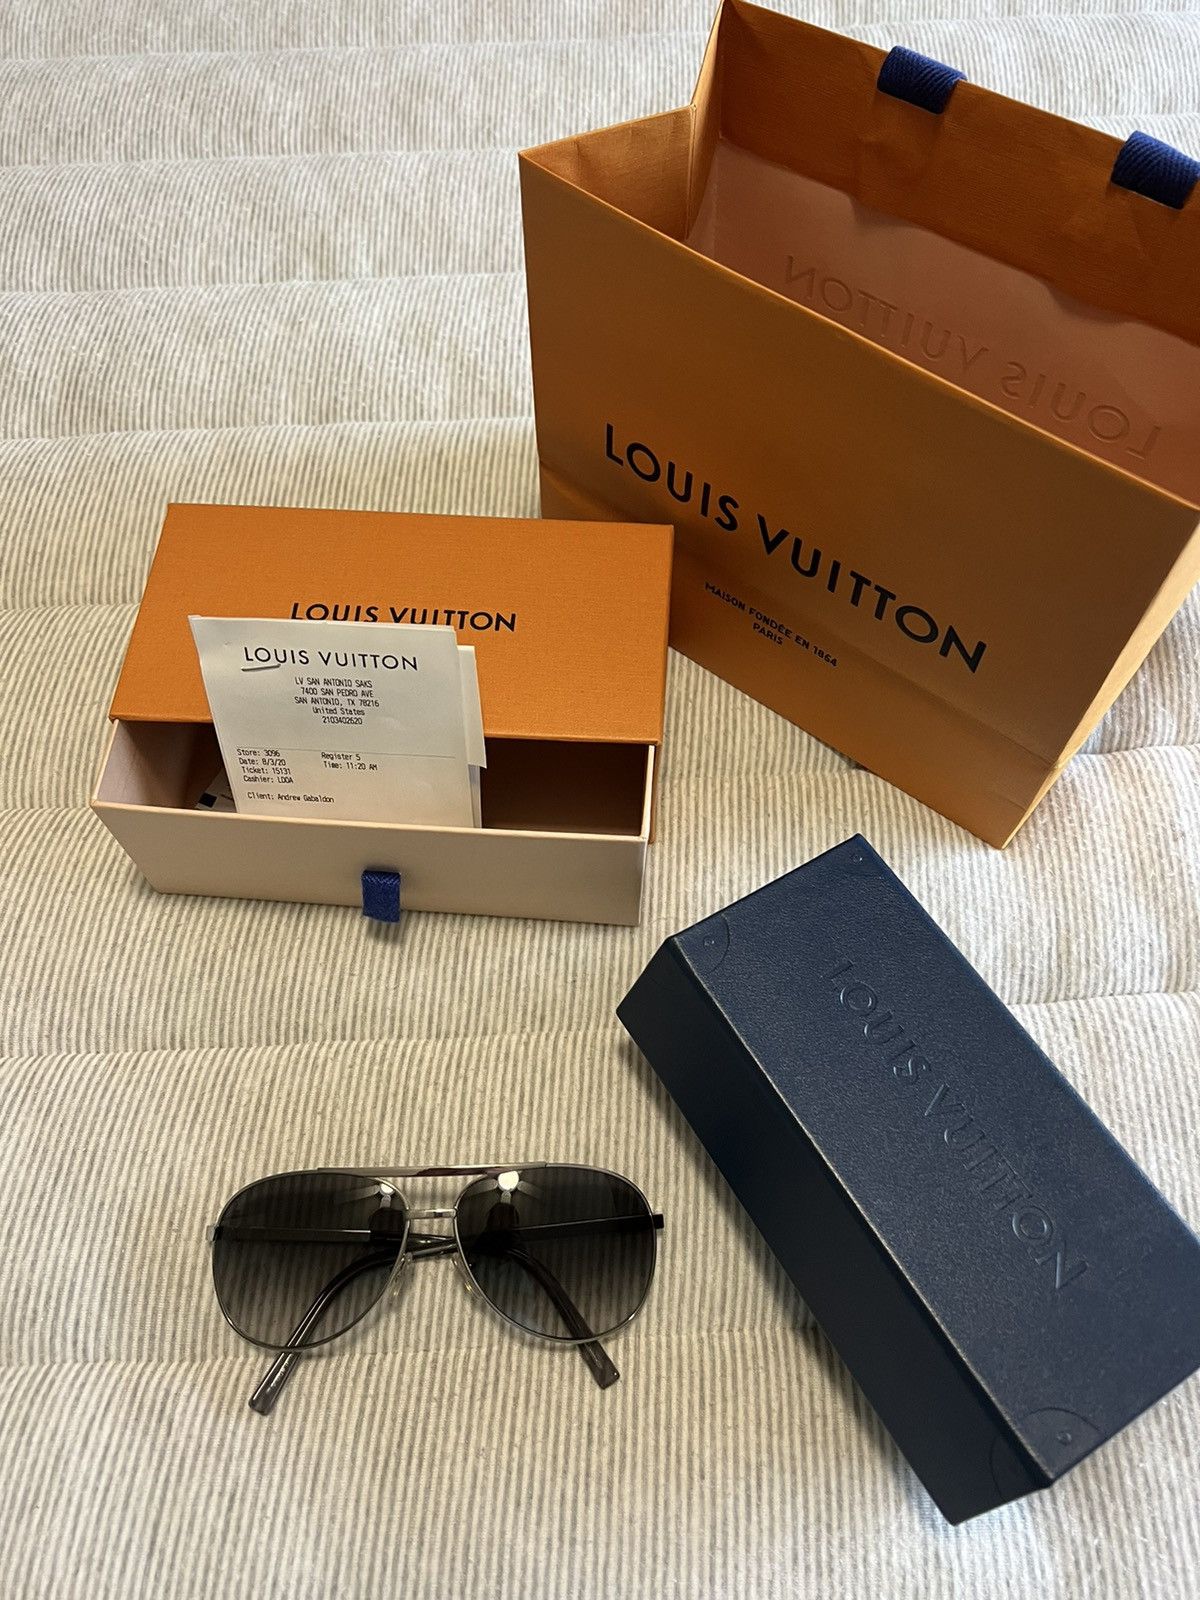 Louis Vuitton - San Antonio, TX 78216